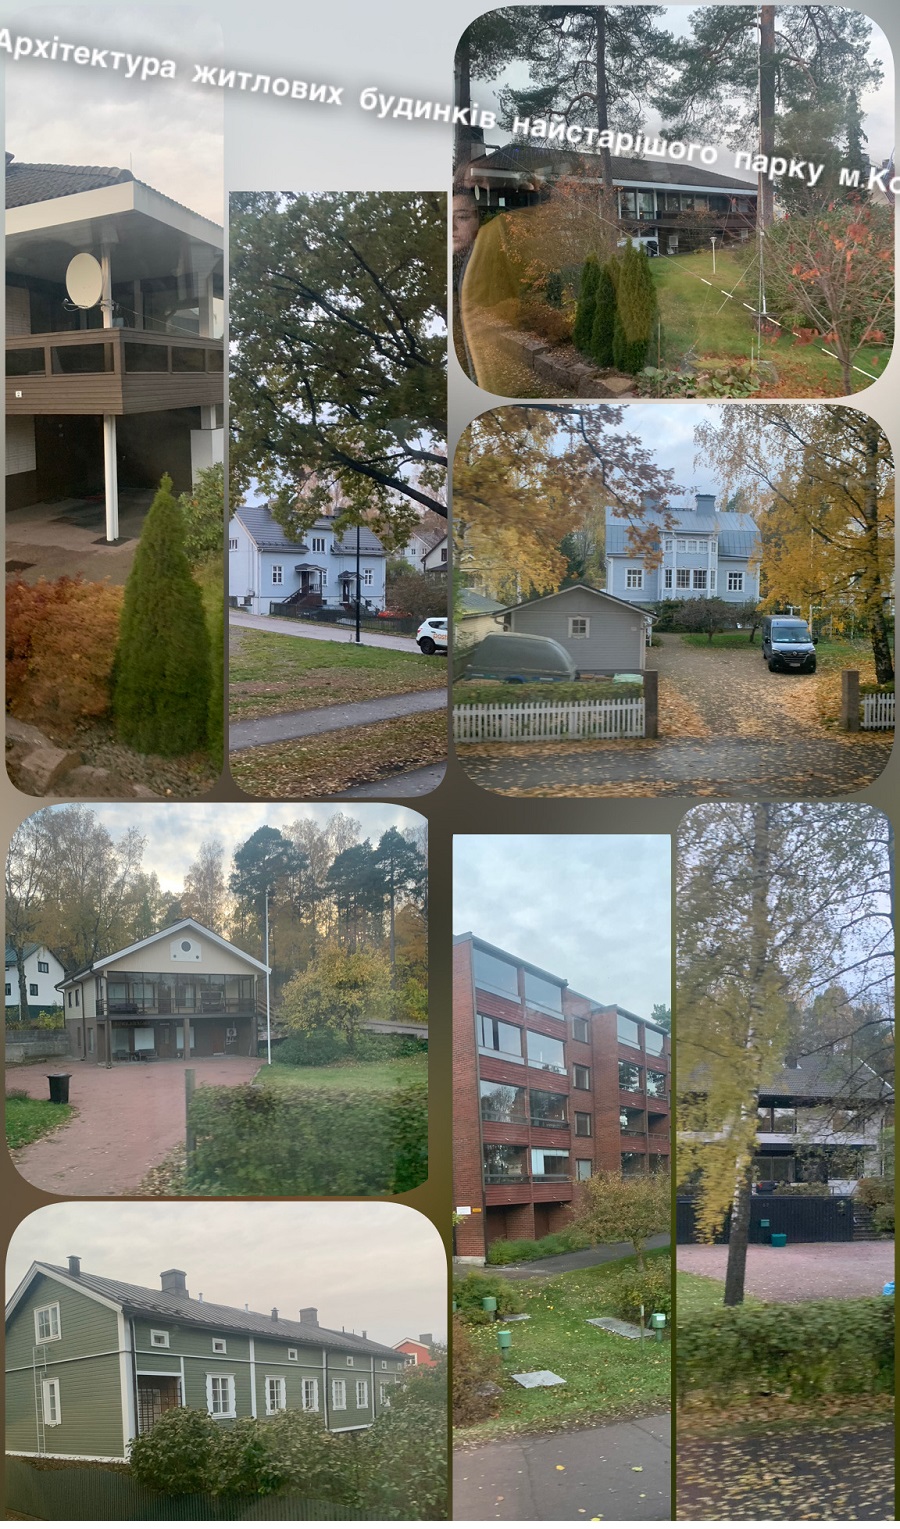 Архітектура невеликих містечок Фінляндії